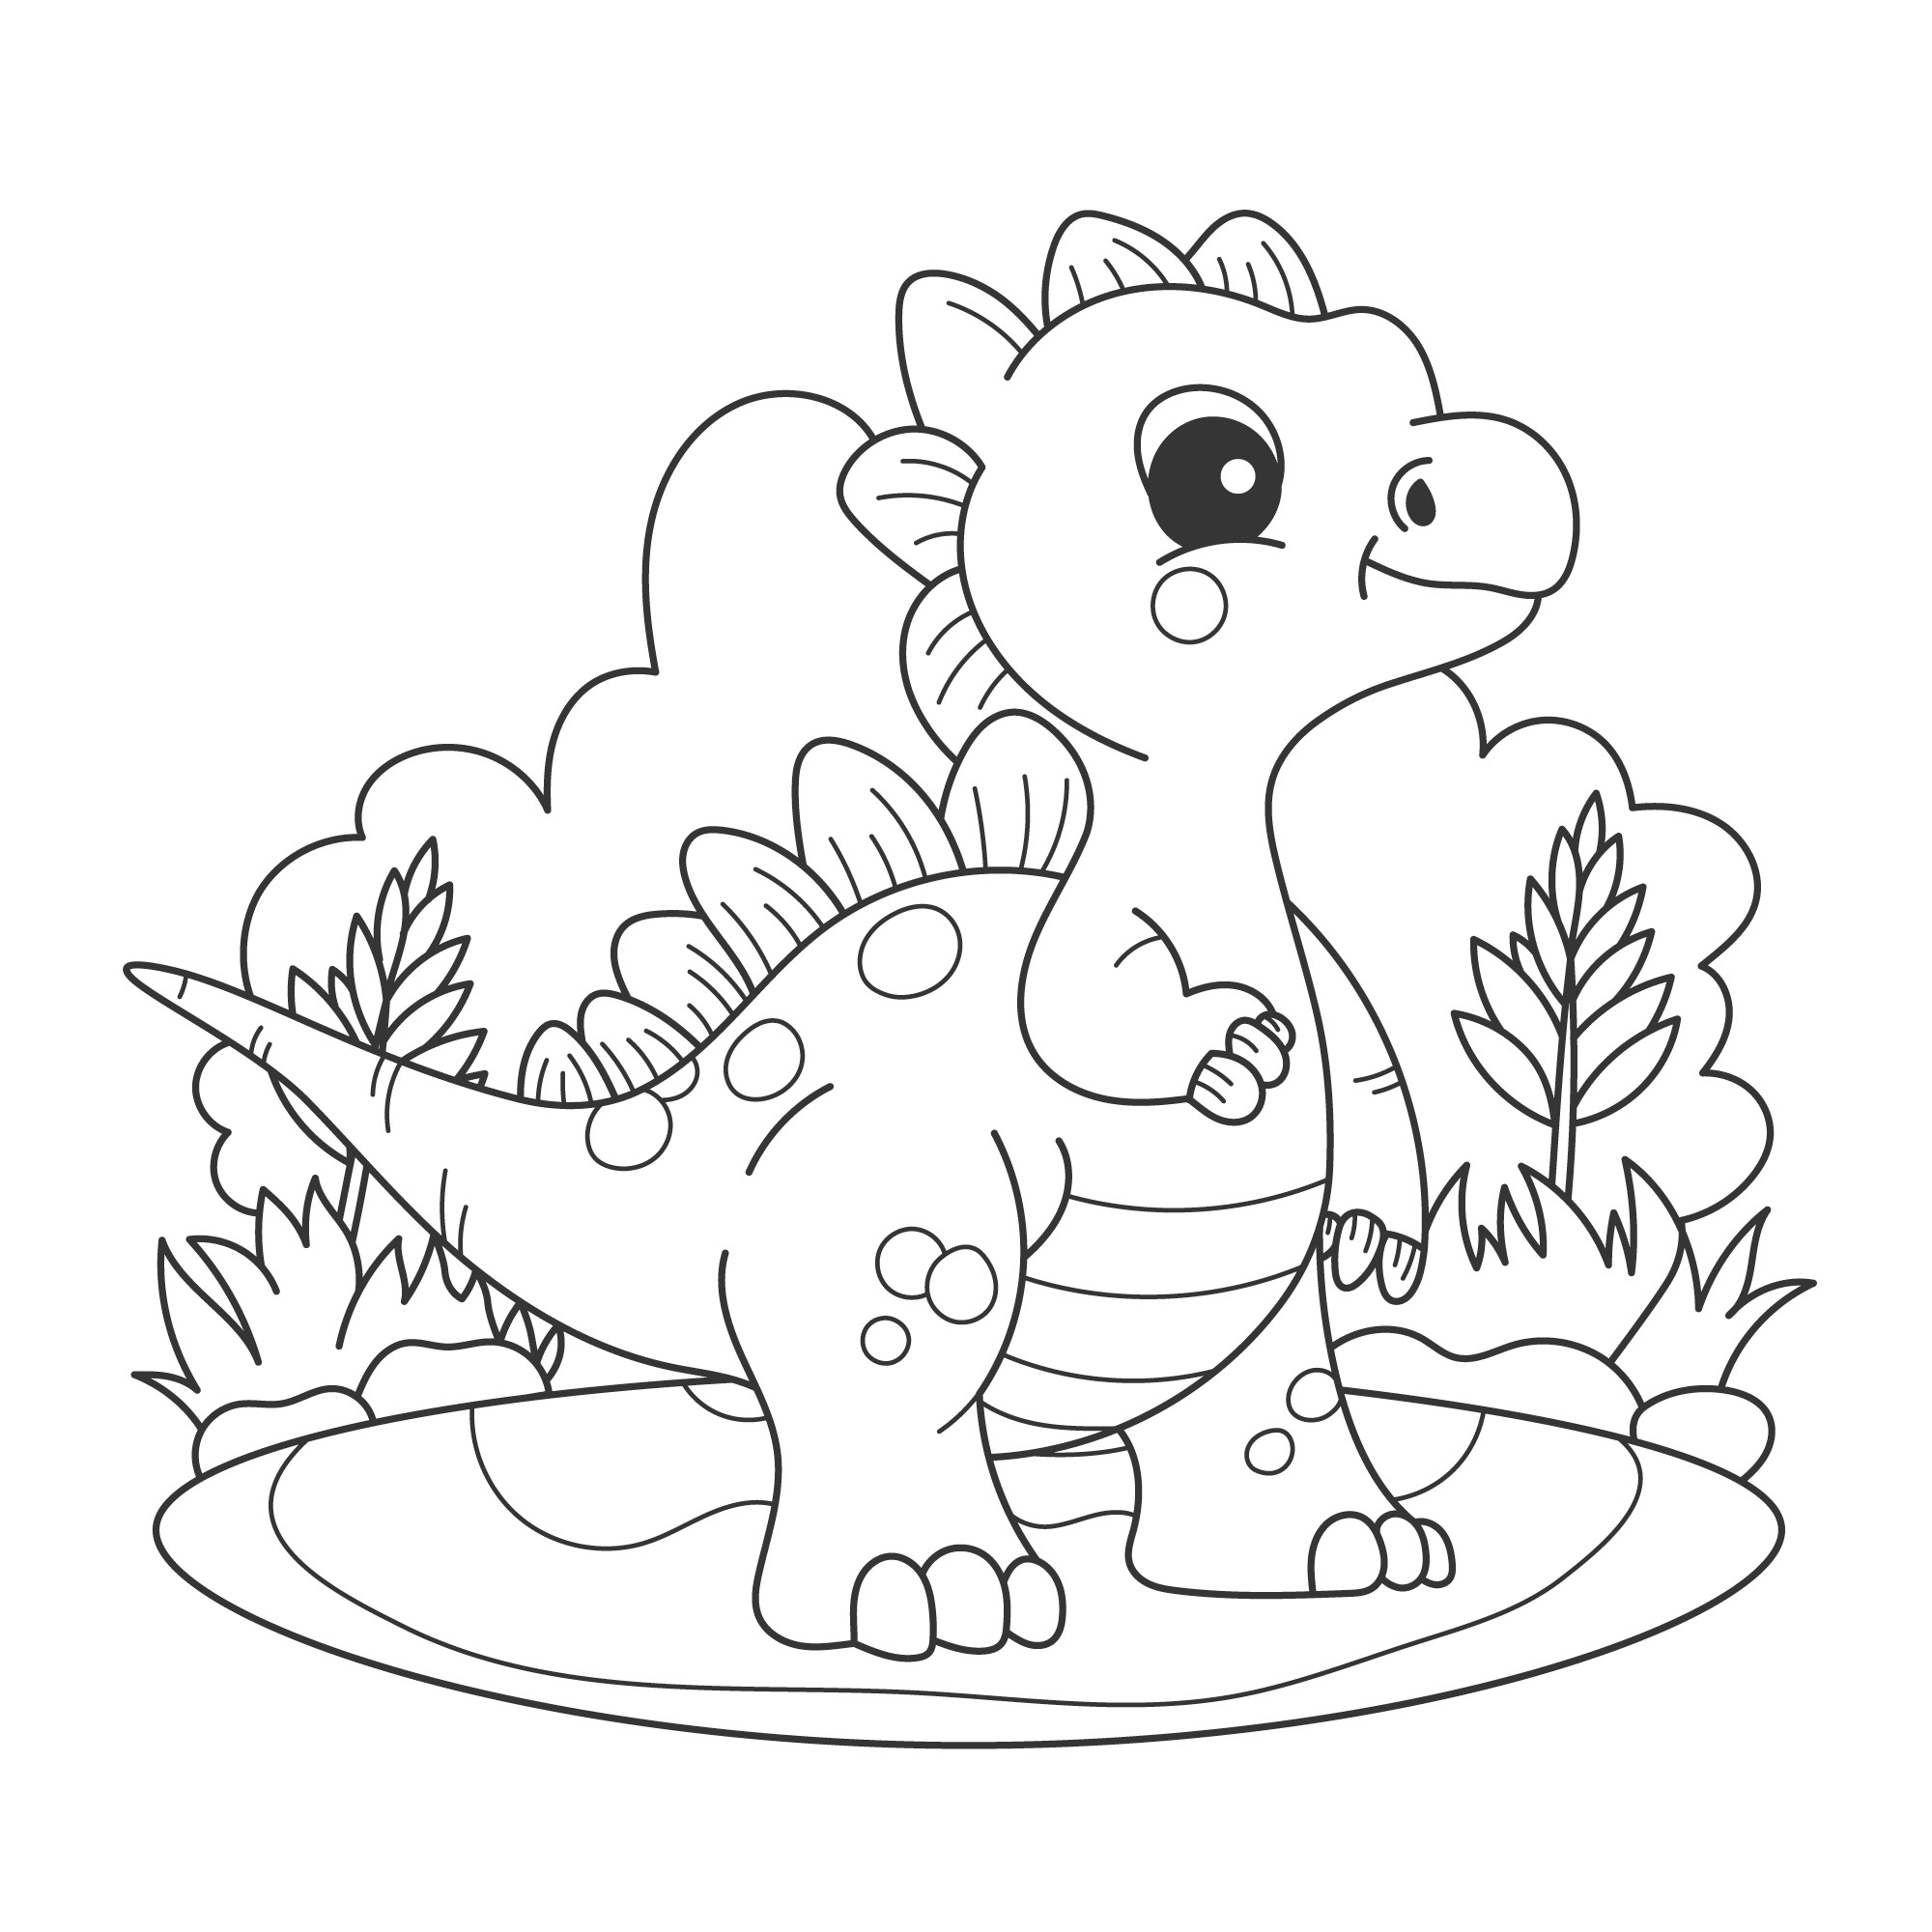 Раскраска для детей: симпатичный динозавр